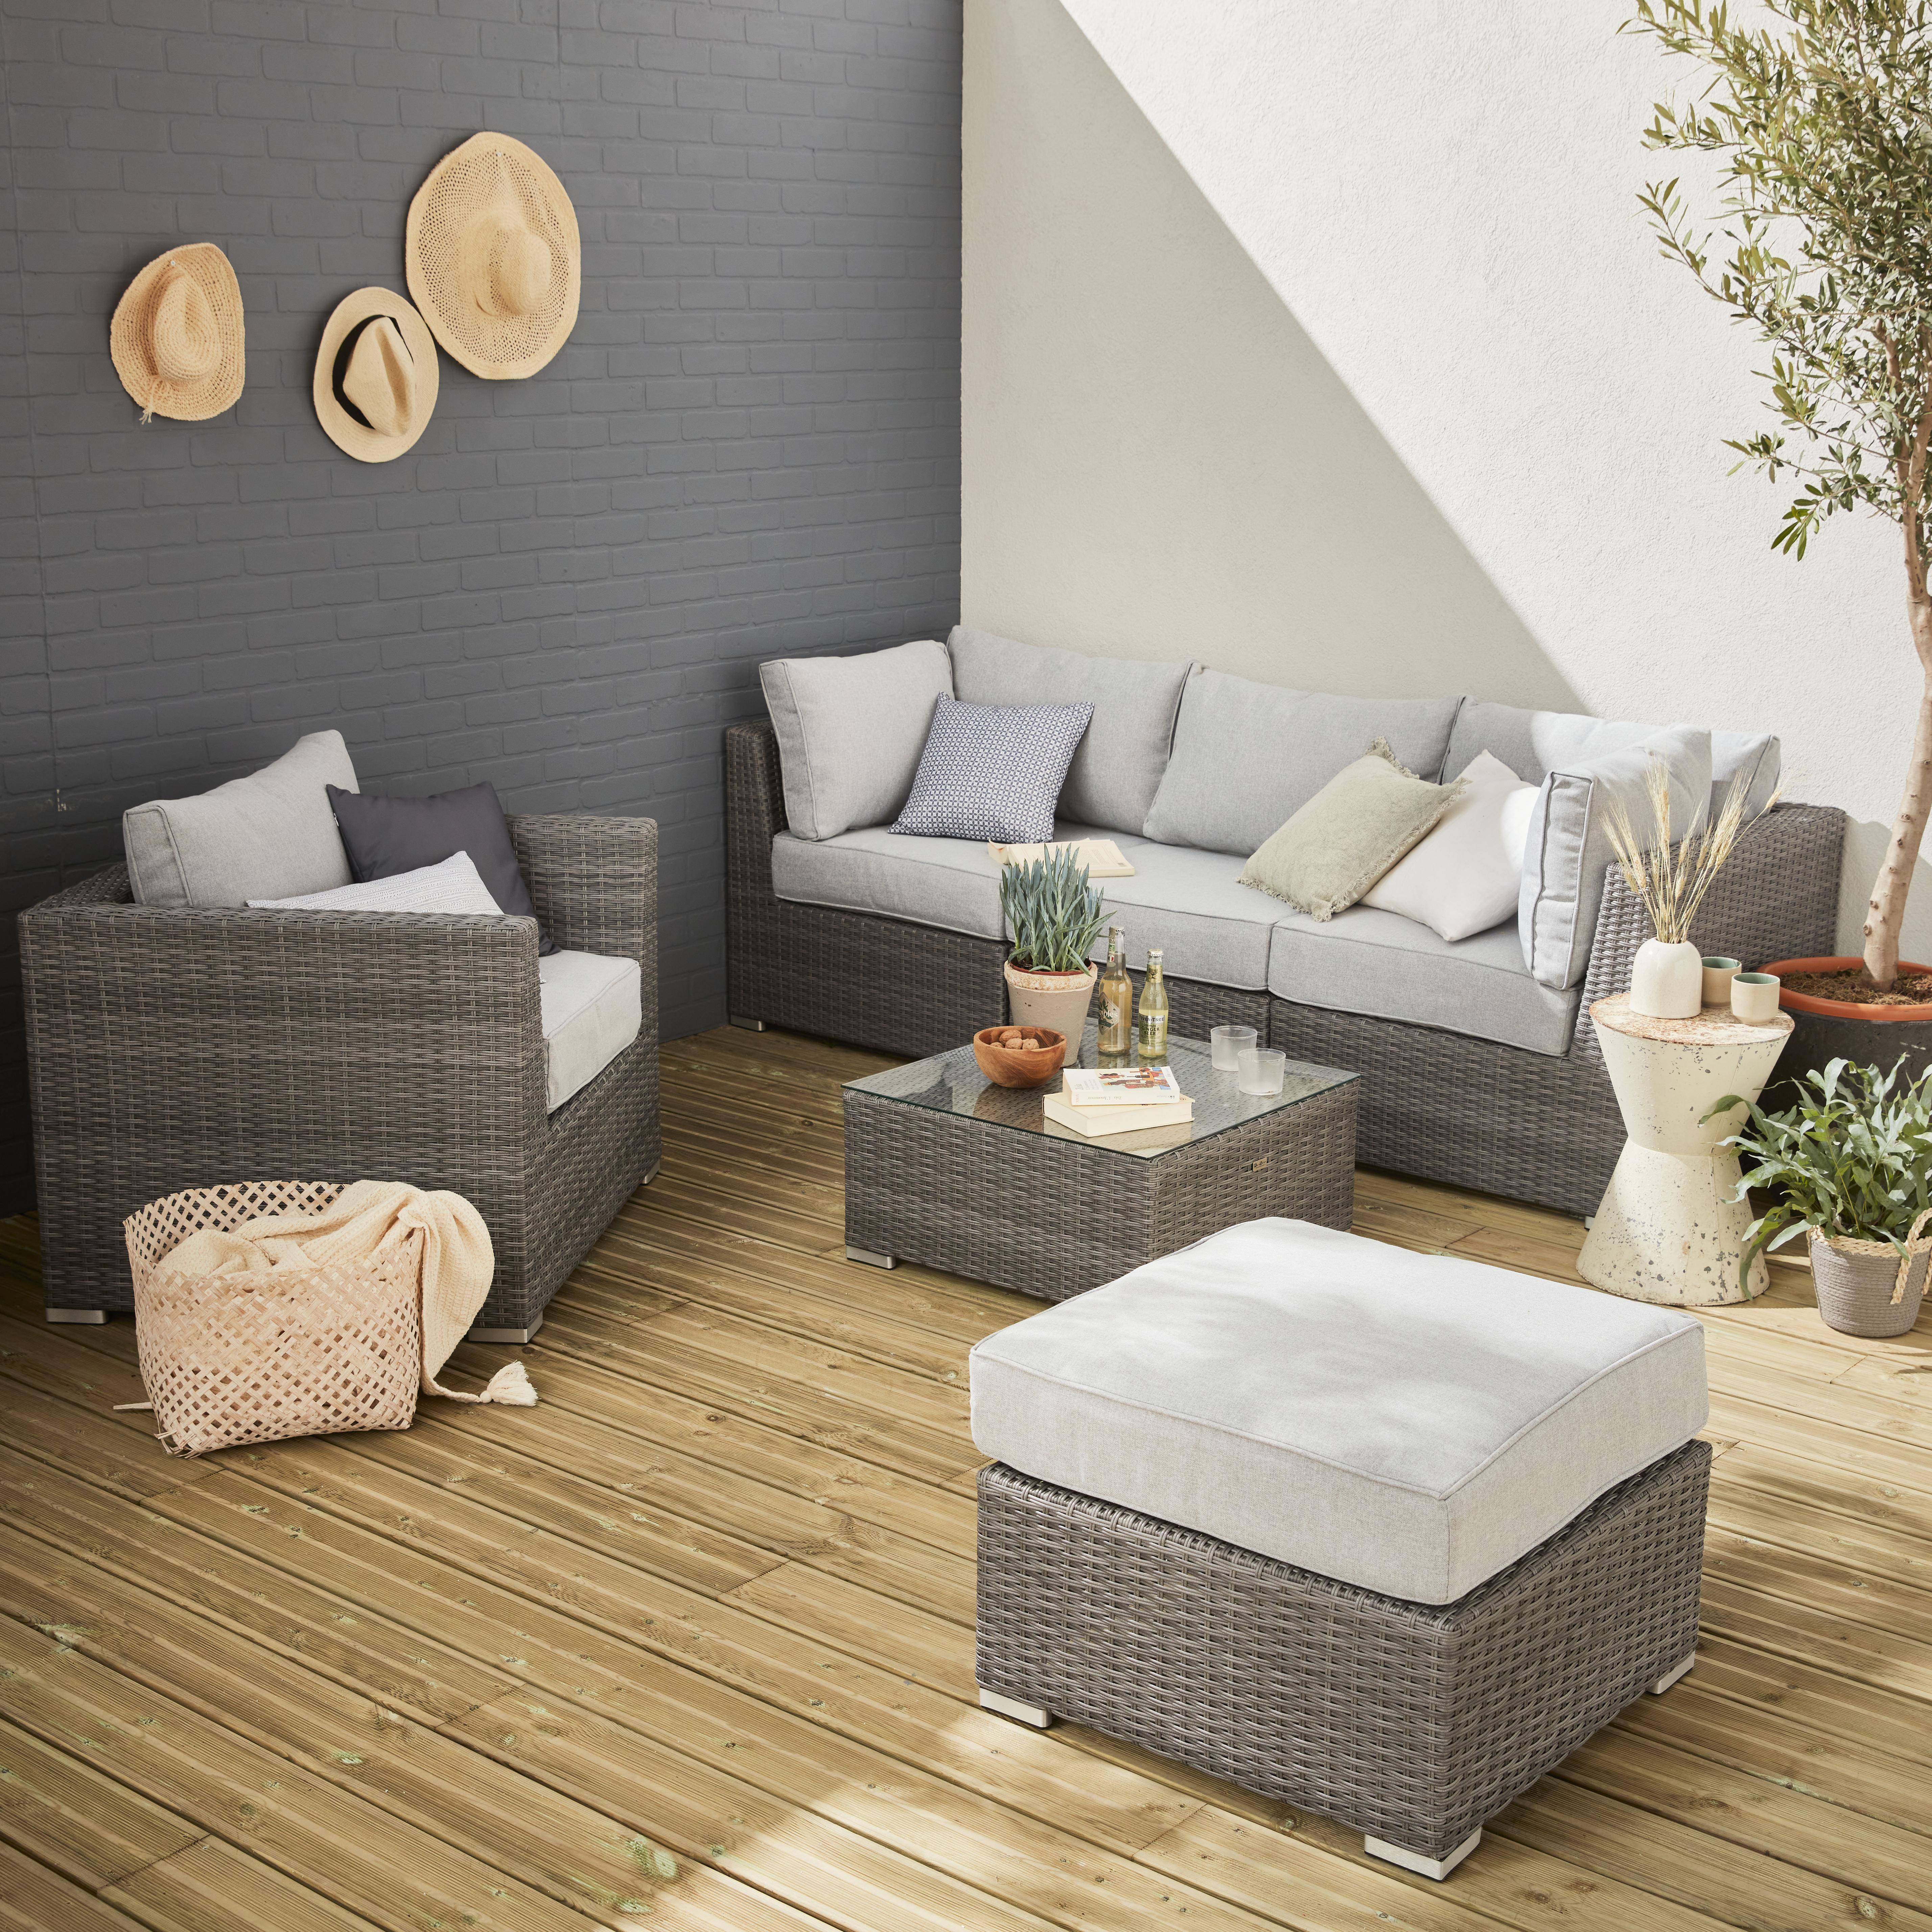 Móveis de jardim redondos de resina curva - Cinzento, almofadas cinzentas claras - 5 lugares, ajustáveis, ultra confortáveis - VINCI Photo1